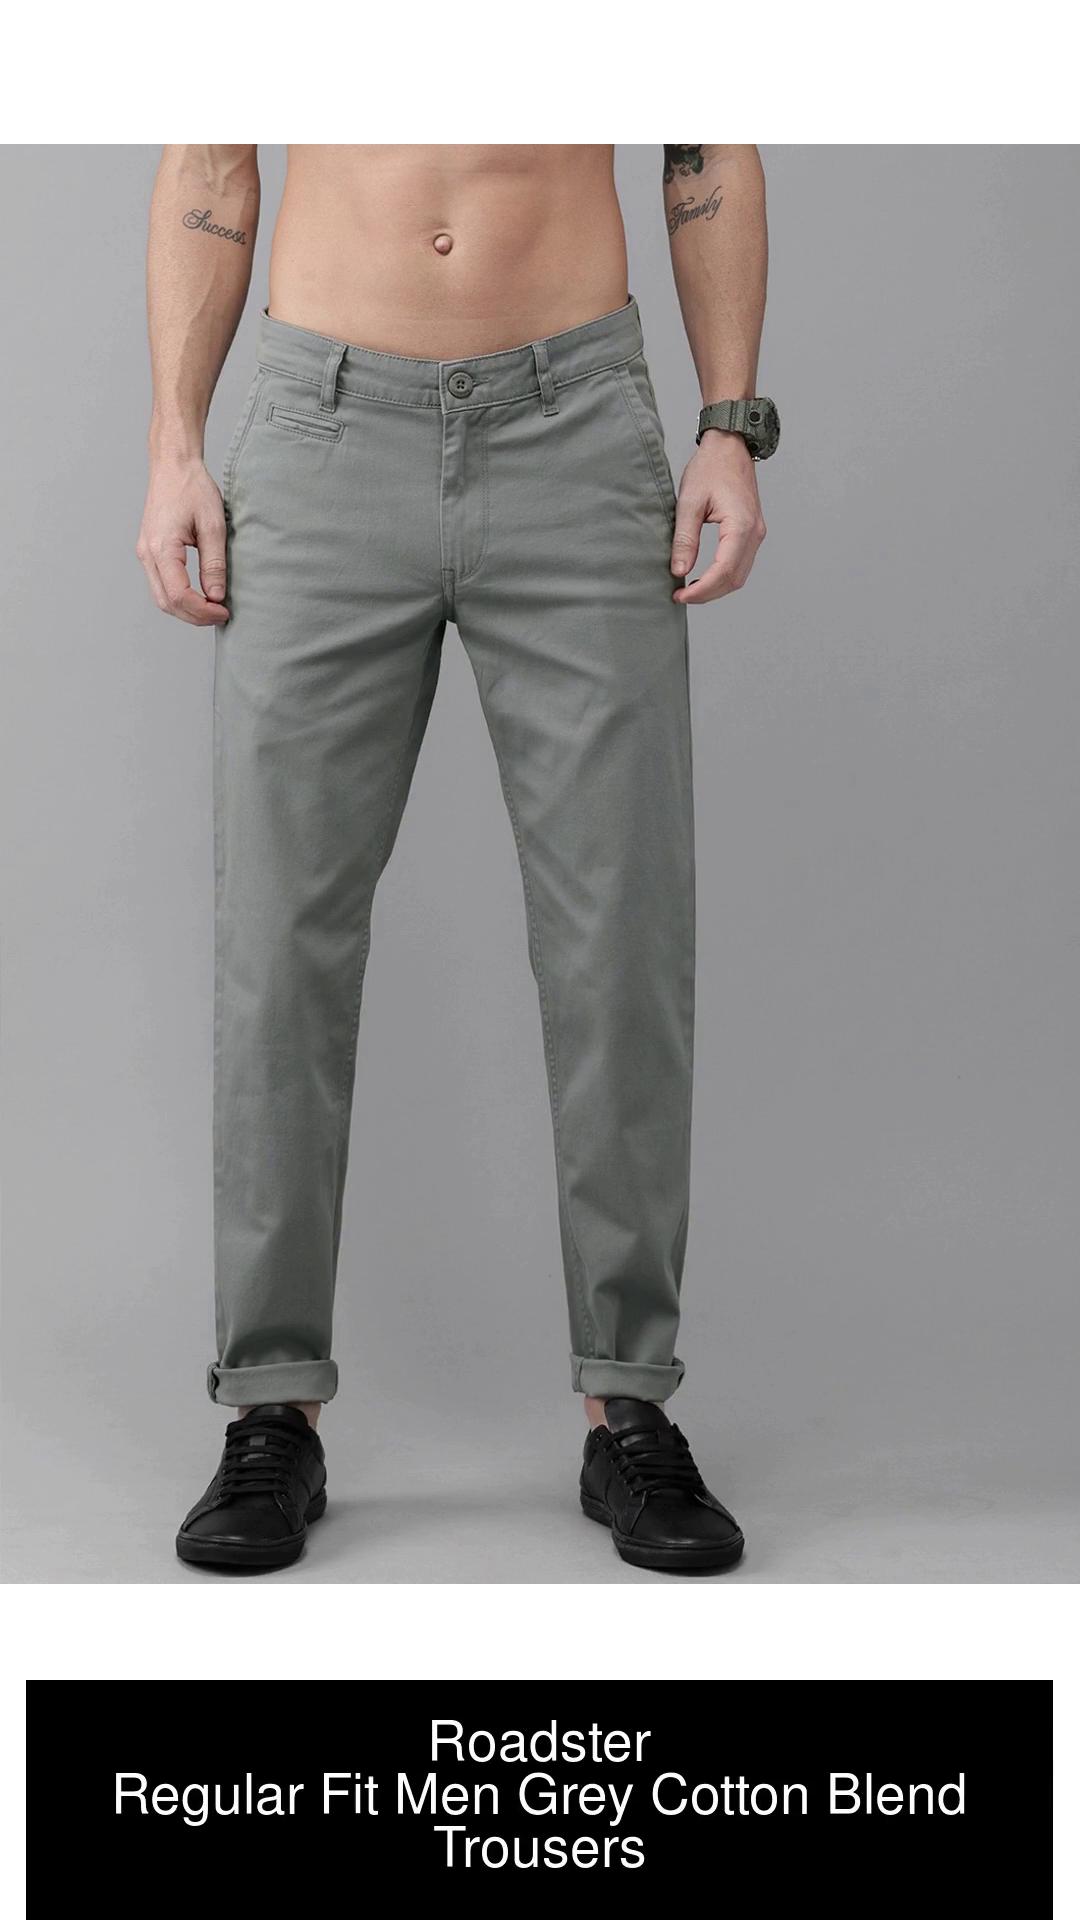 Buy Grey Cotton Track Pants For Men Online TT Bazaar